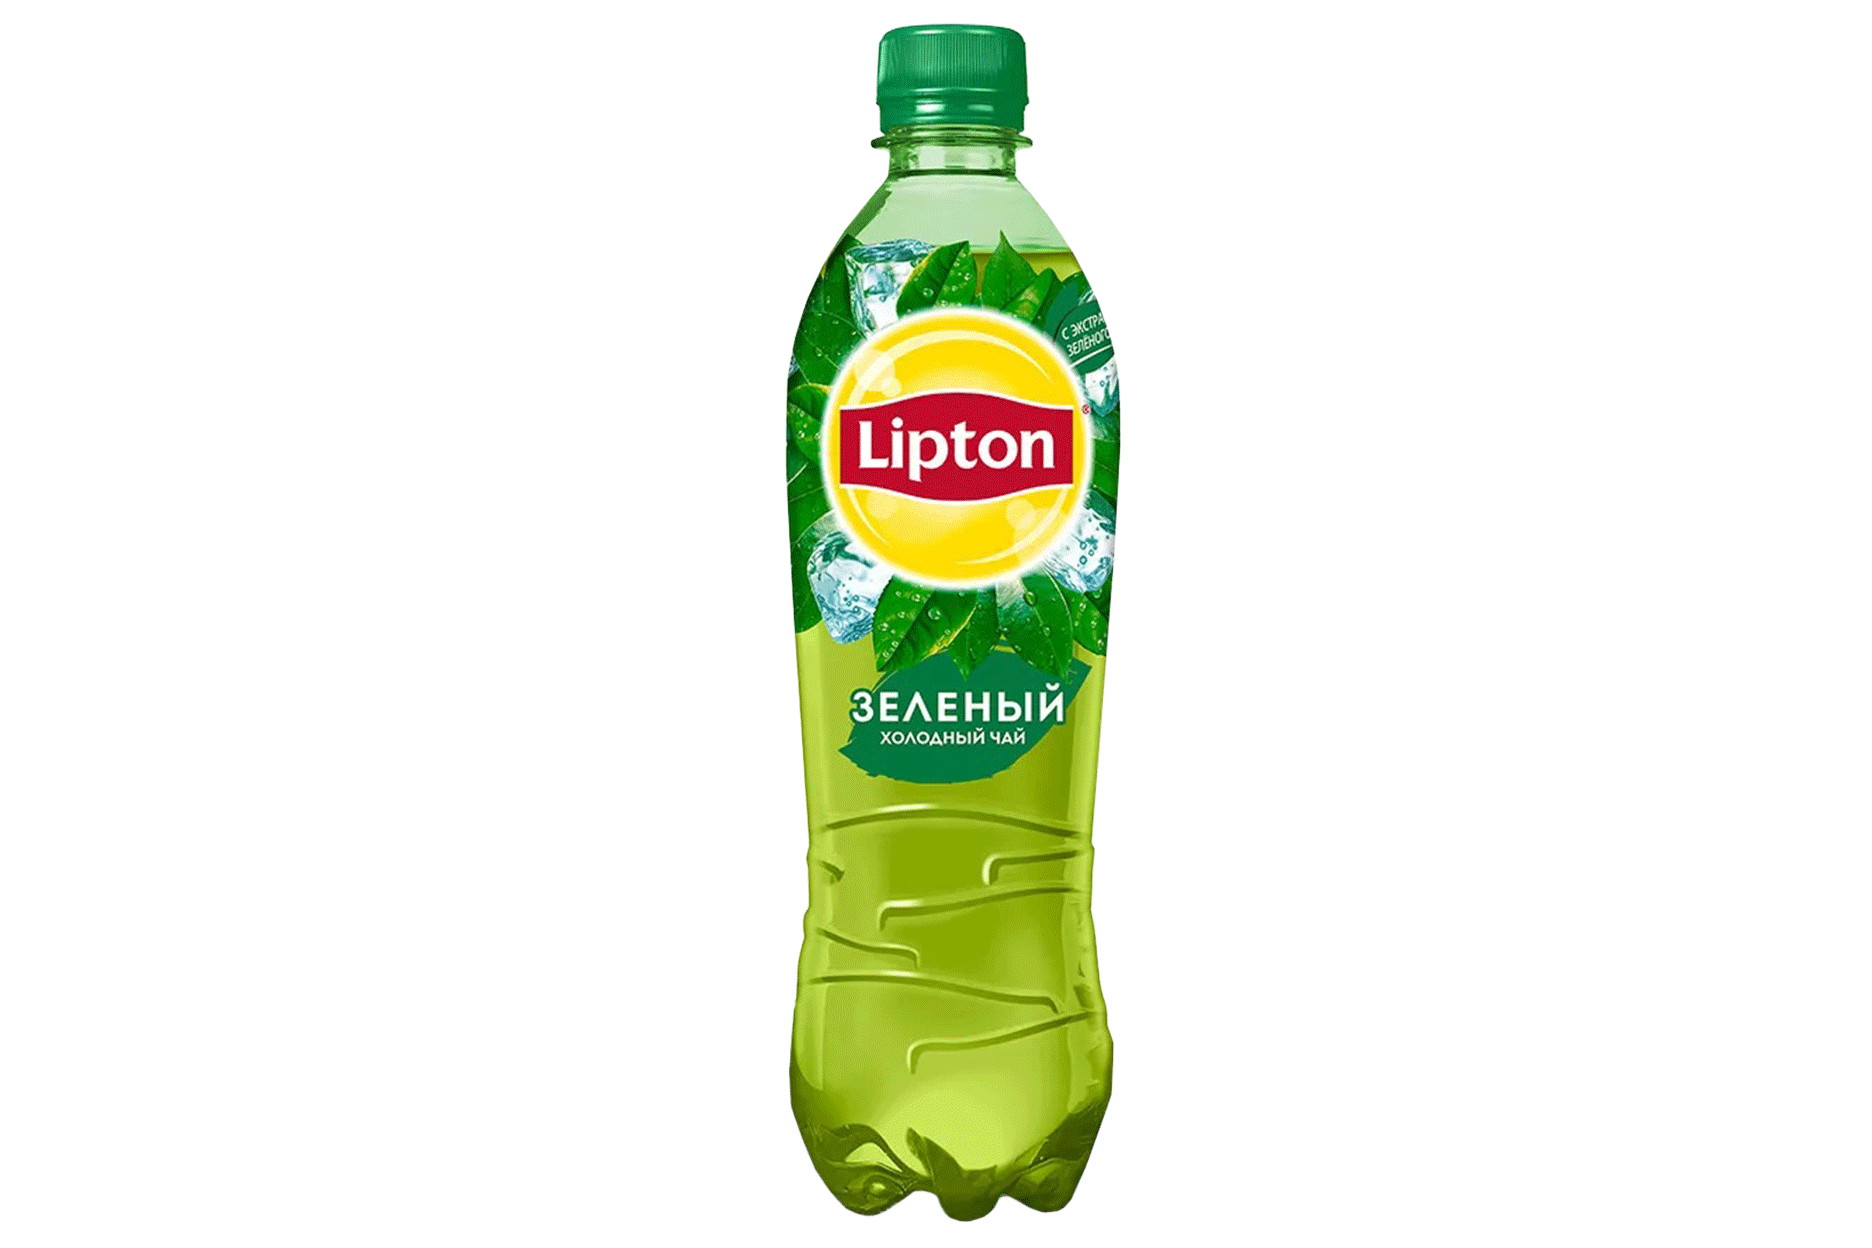 Липтон 1.5. Чай Липтон 0.5. Липтон зеленый чай 1.5. Липтон зеленый чай 1 литр. Липтон зеленый чай 0.5.